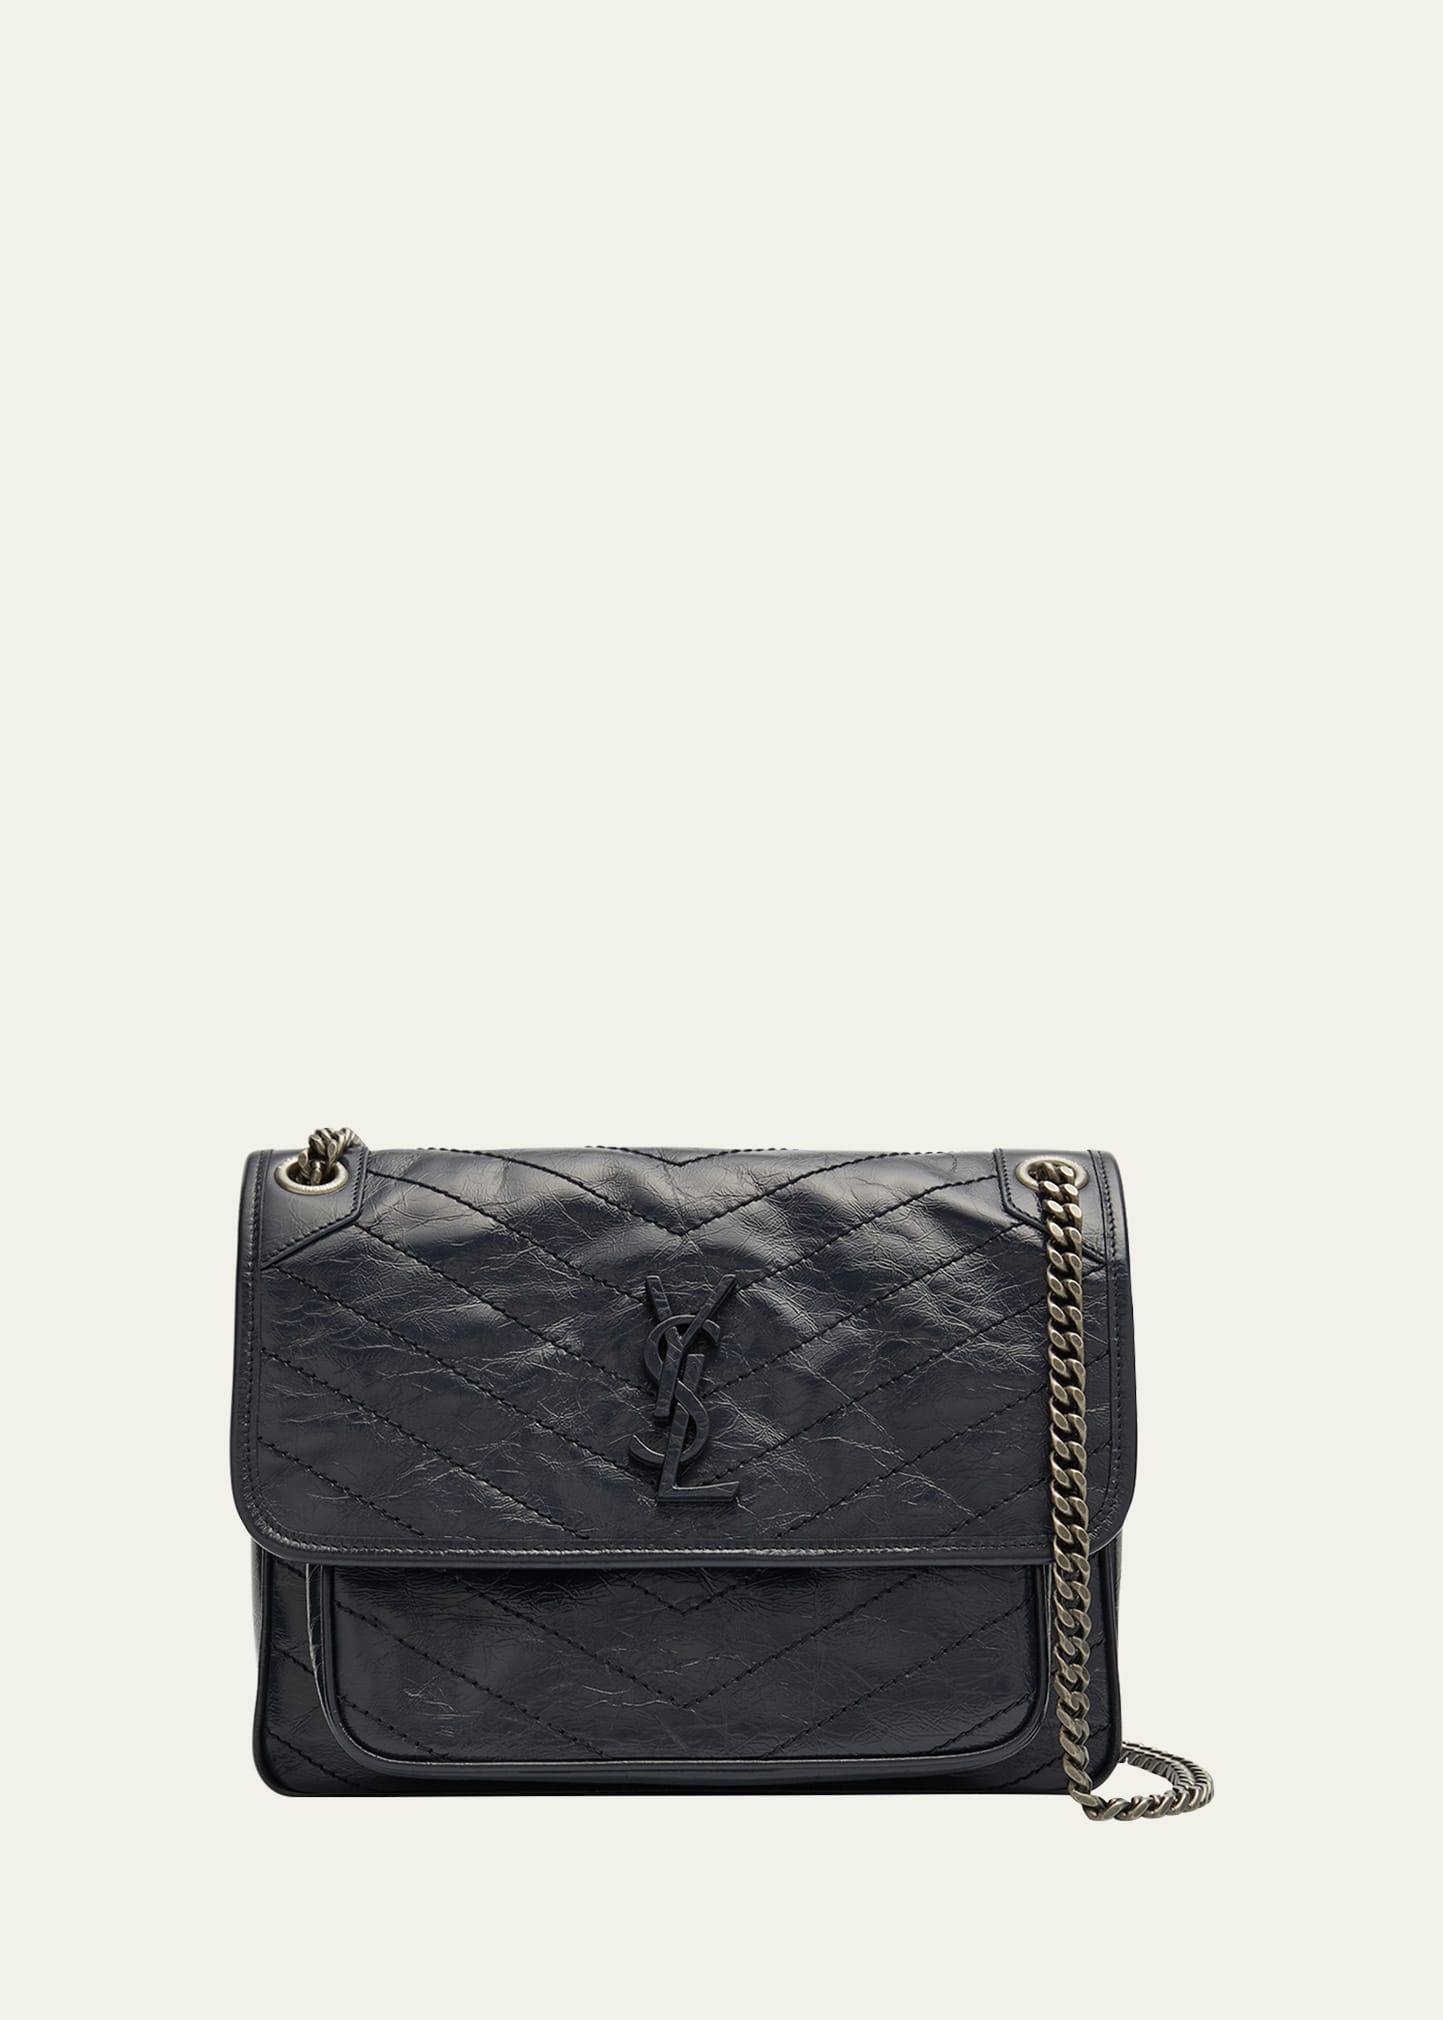 Niki Medium Flap YSL Shoulder Bag in Crinkled Leather